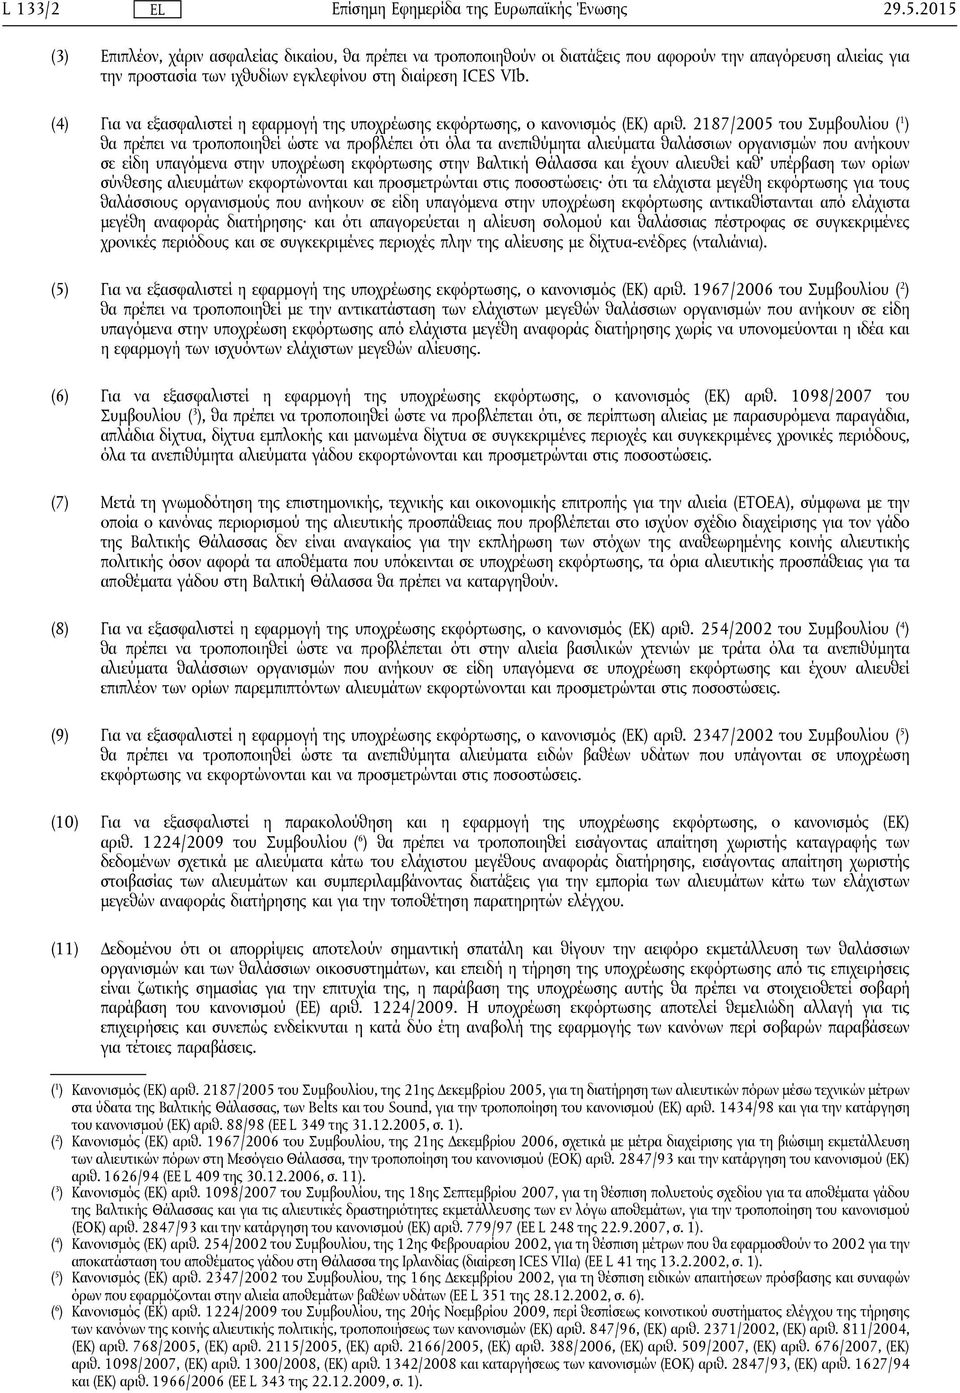 2187/2005 του Συμβουλίου ( 1 ) θα πρέπει να τροποποιηθεί ώστε να προβλέπει ότι όλα τα ανεπιθύμητα αλιεύματα θαλάσσιων οργανισμών που ανήκουν σε είδη υπαγόμενα στην υποχρέωση εκφόρτωσης στην Βαλτική